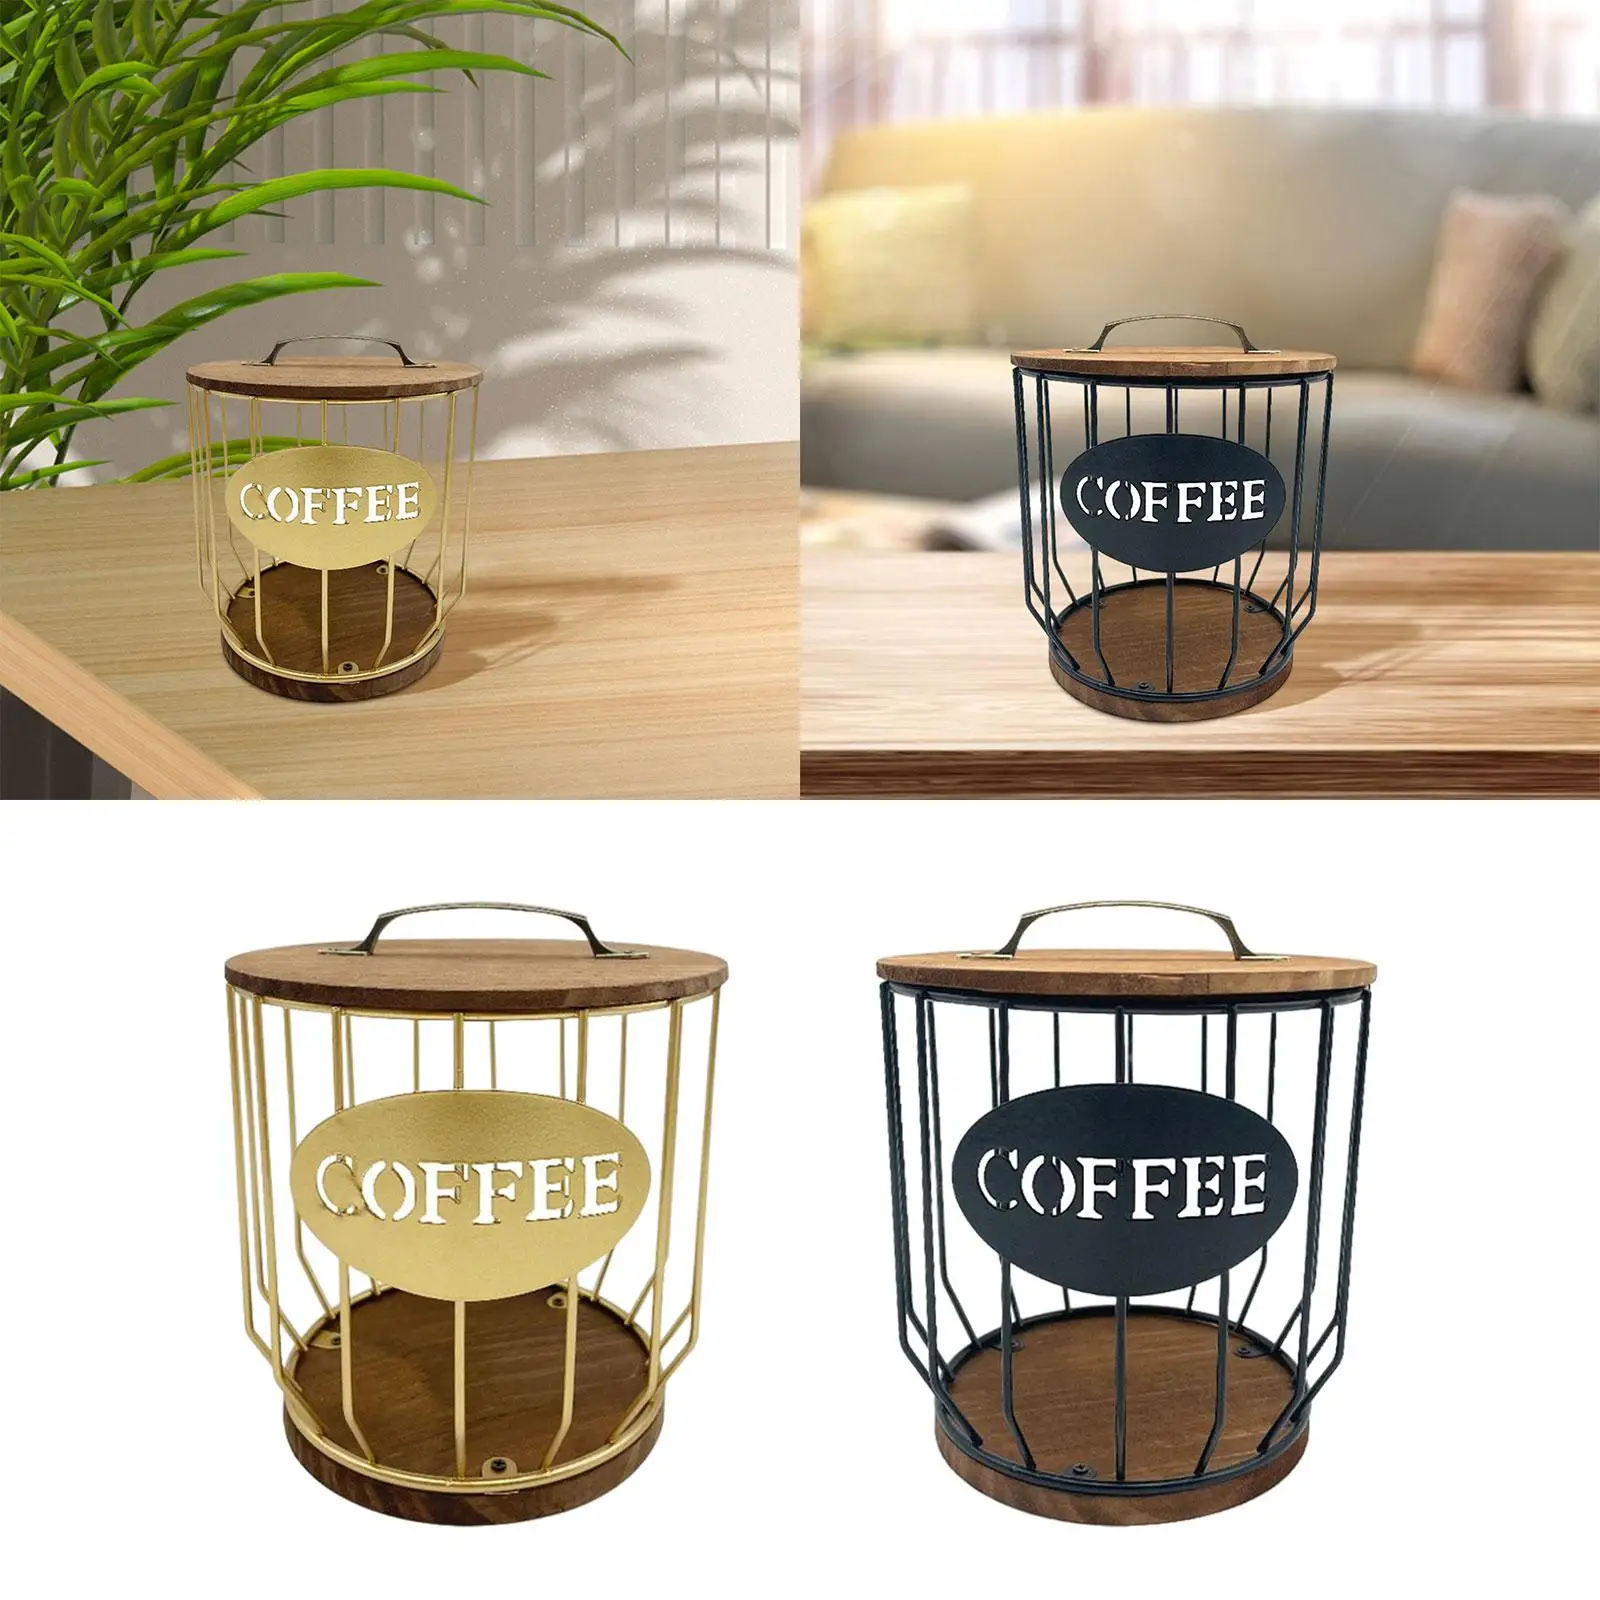 Coffee Pod Organizer Coffee Pod Storage Easy to Refill and Organize Coffee Pod